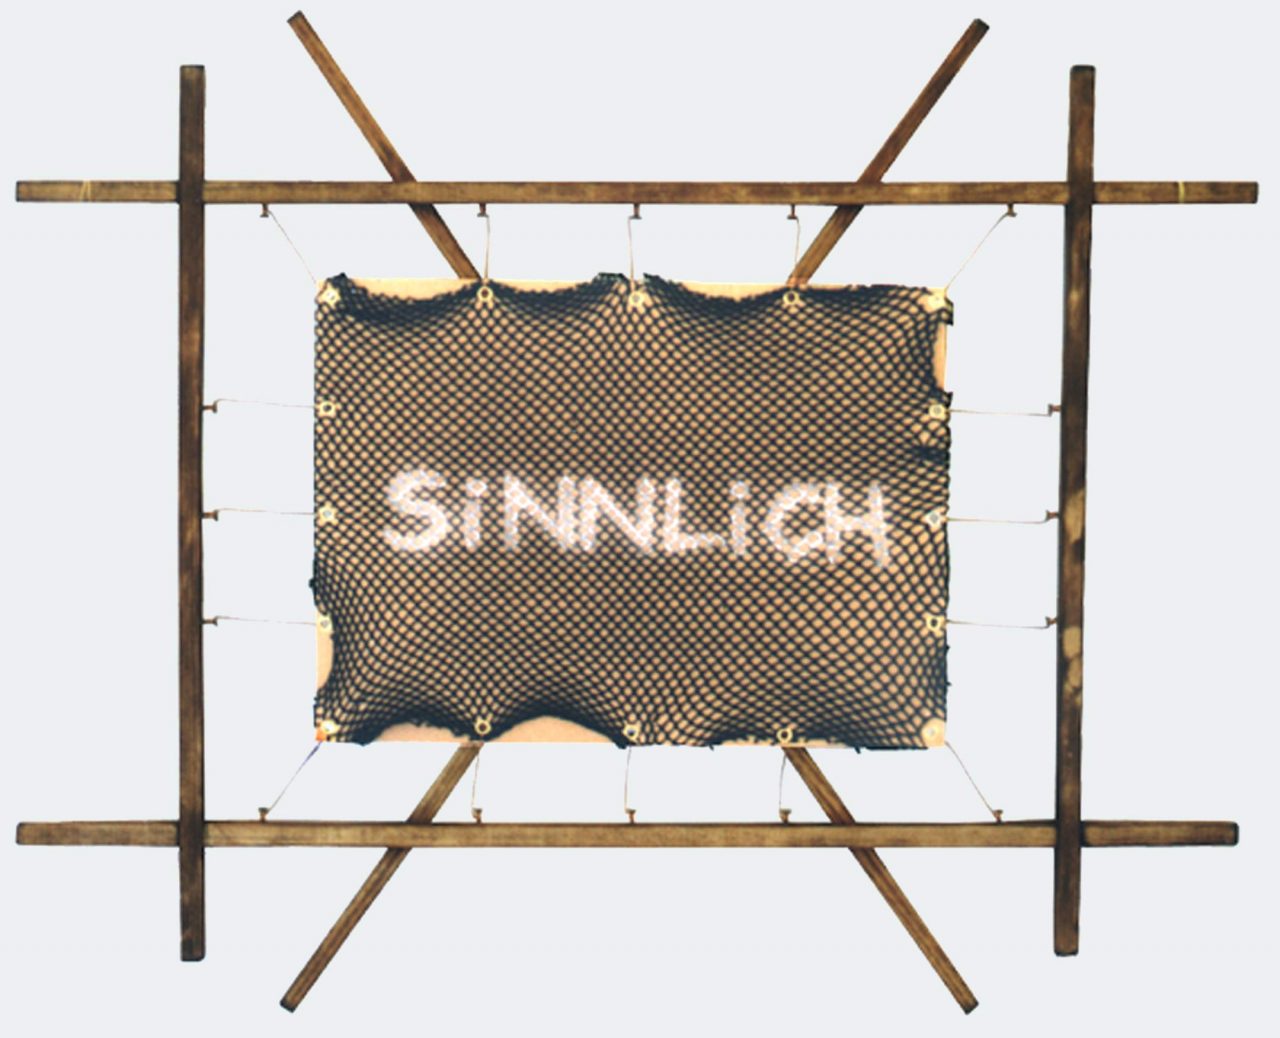 SINNLICH, 52 x 65 cm, 1999